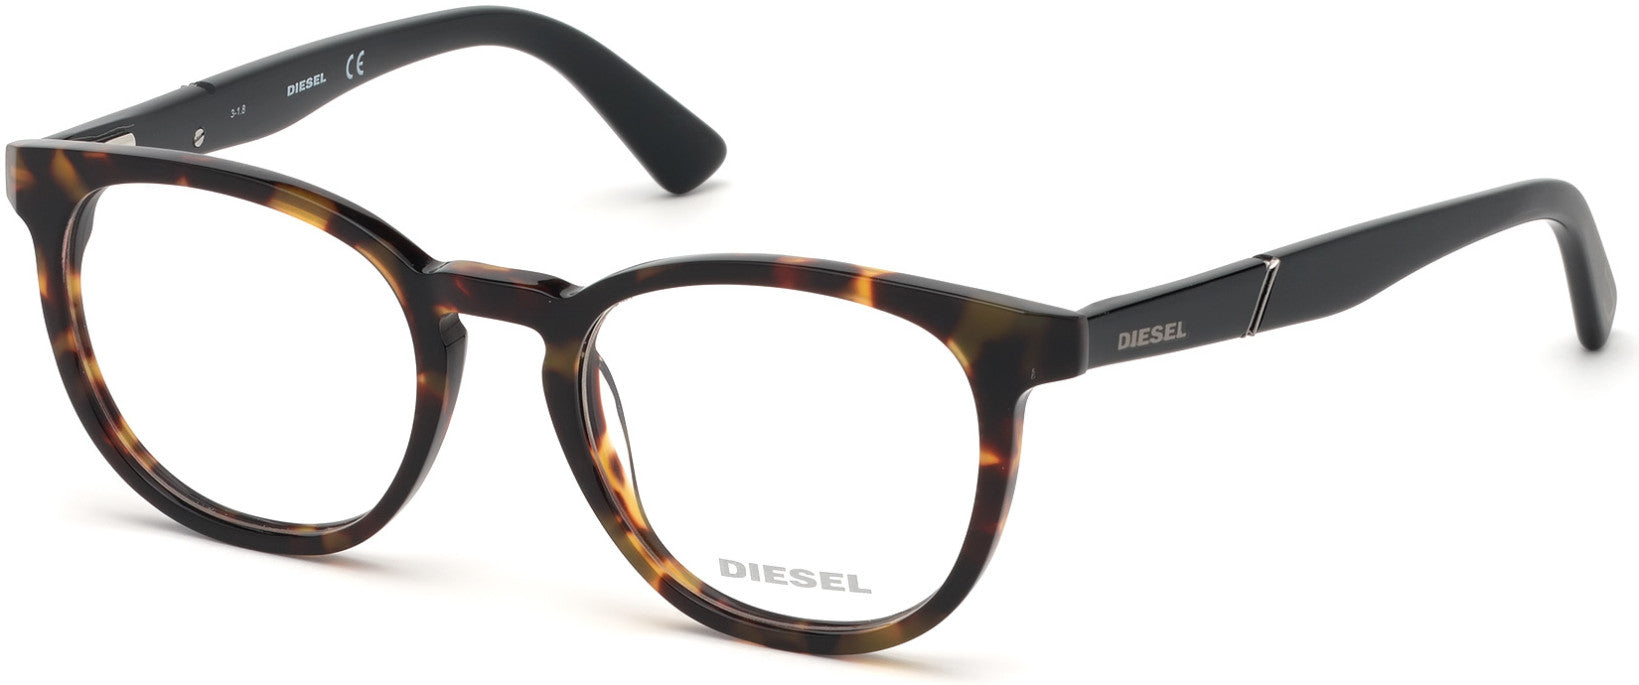 Diesel DL5295 Round Eyeglasses 052-052 - Dark Havana